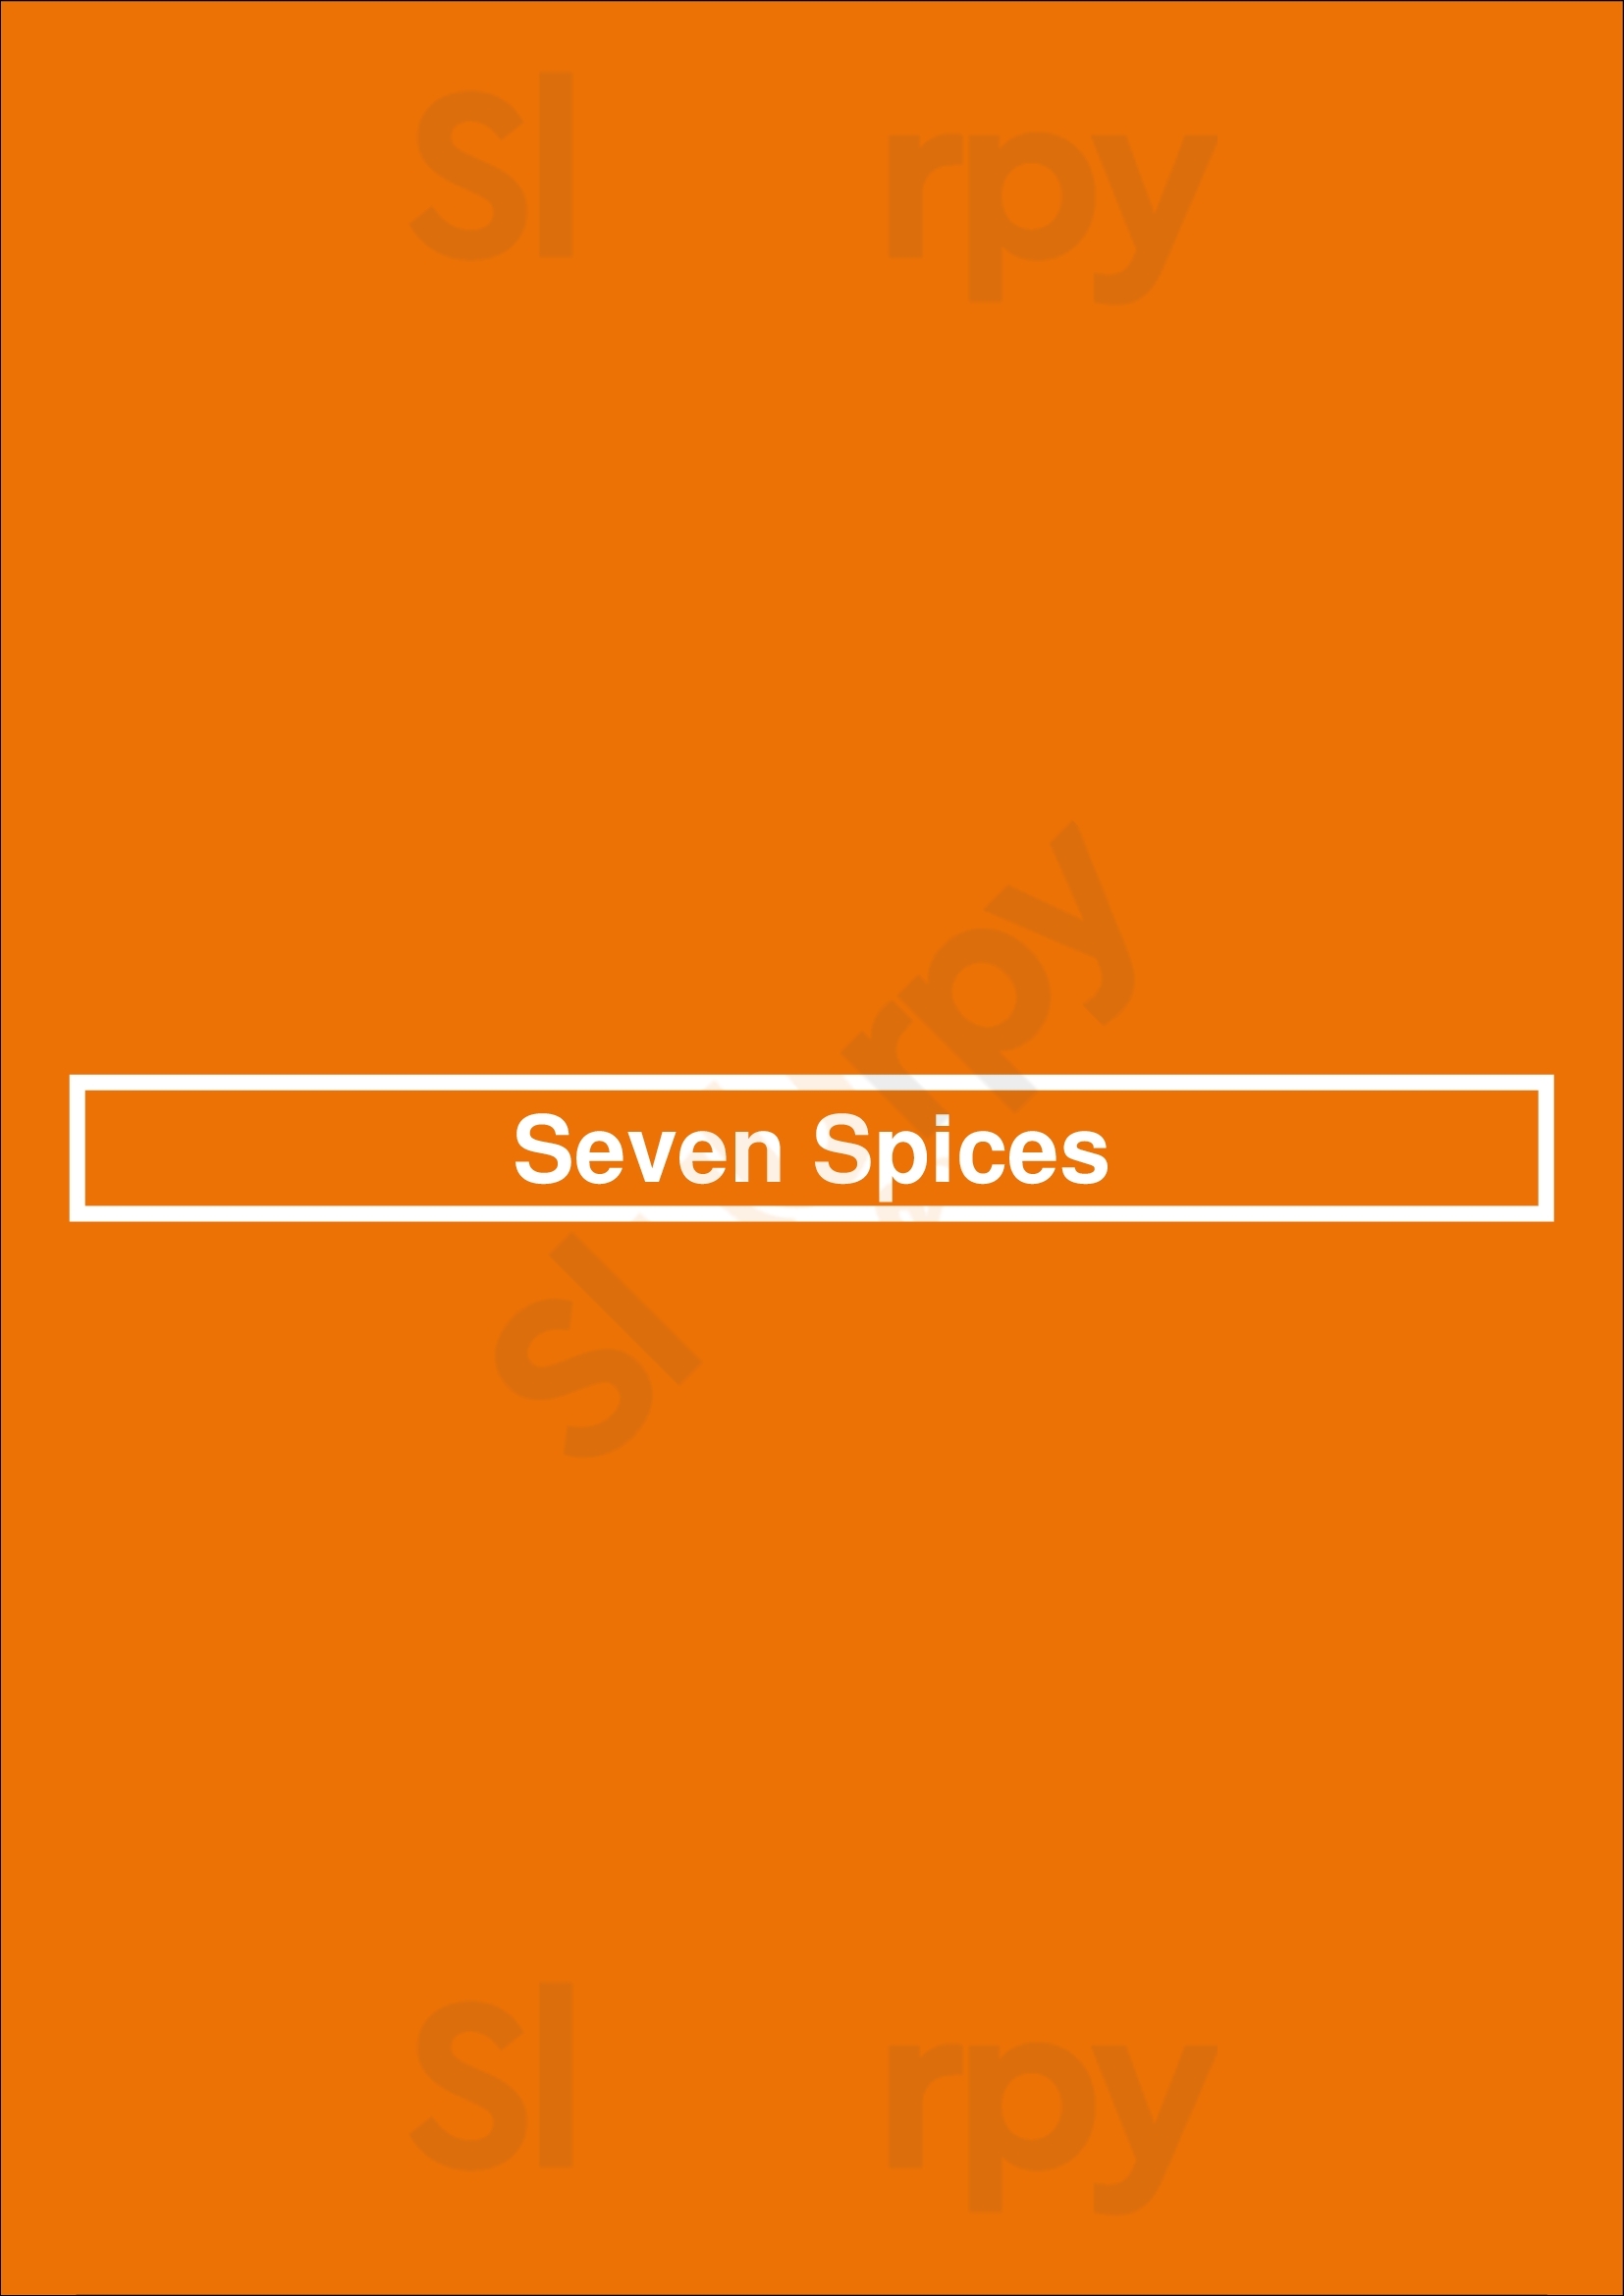 Seven Spices Glasgow Menu - 1